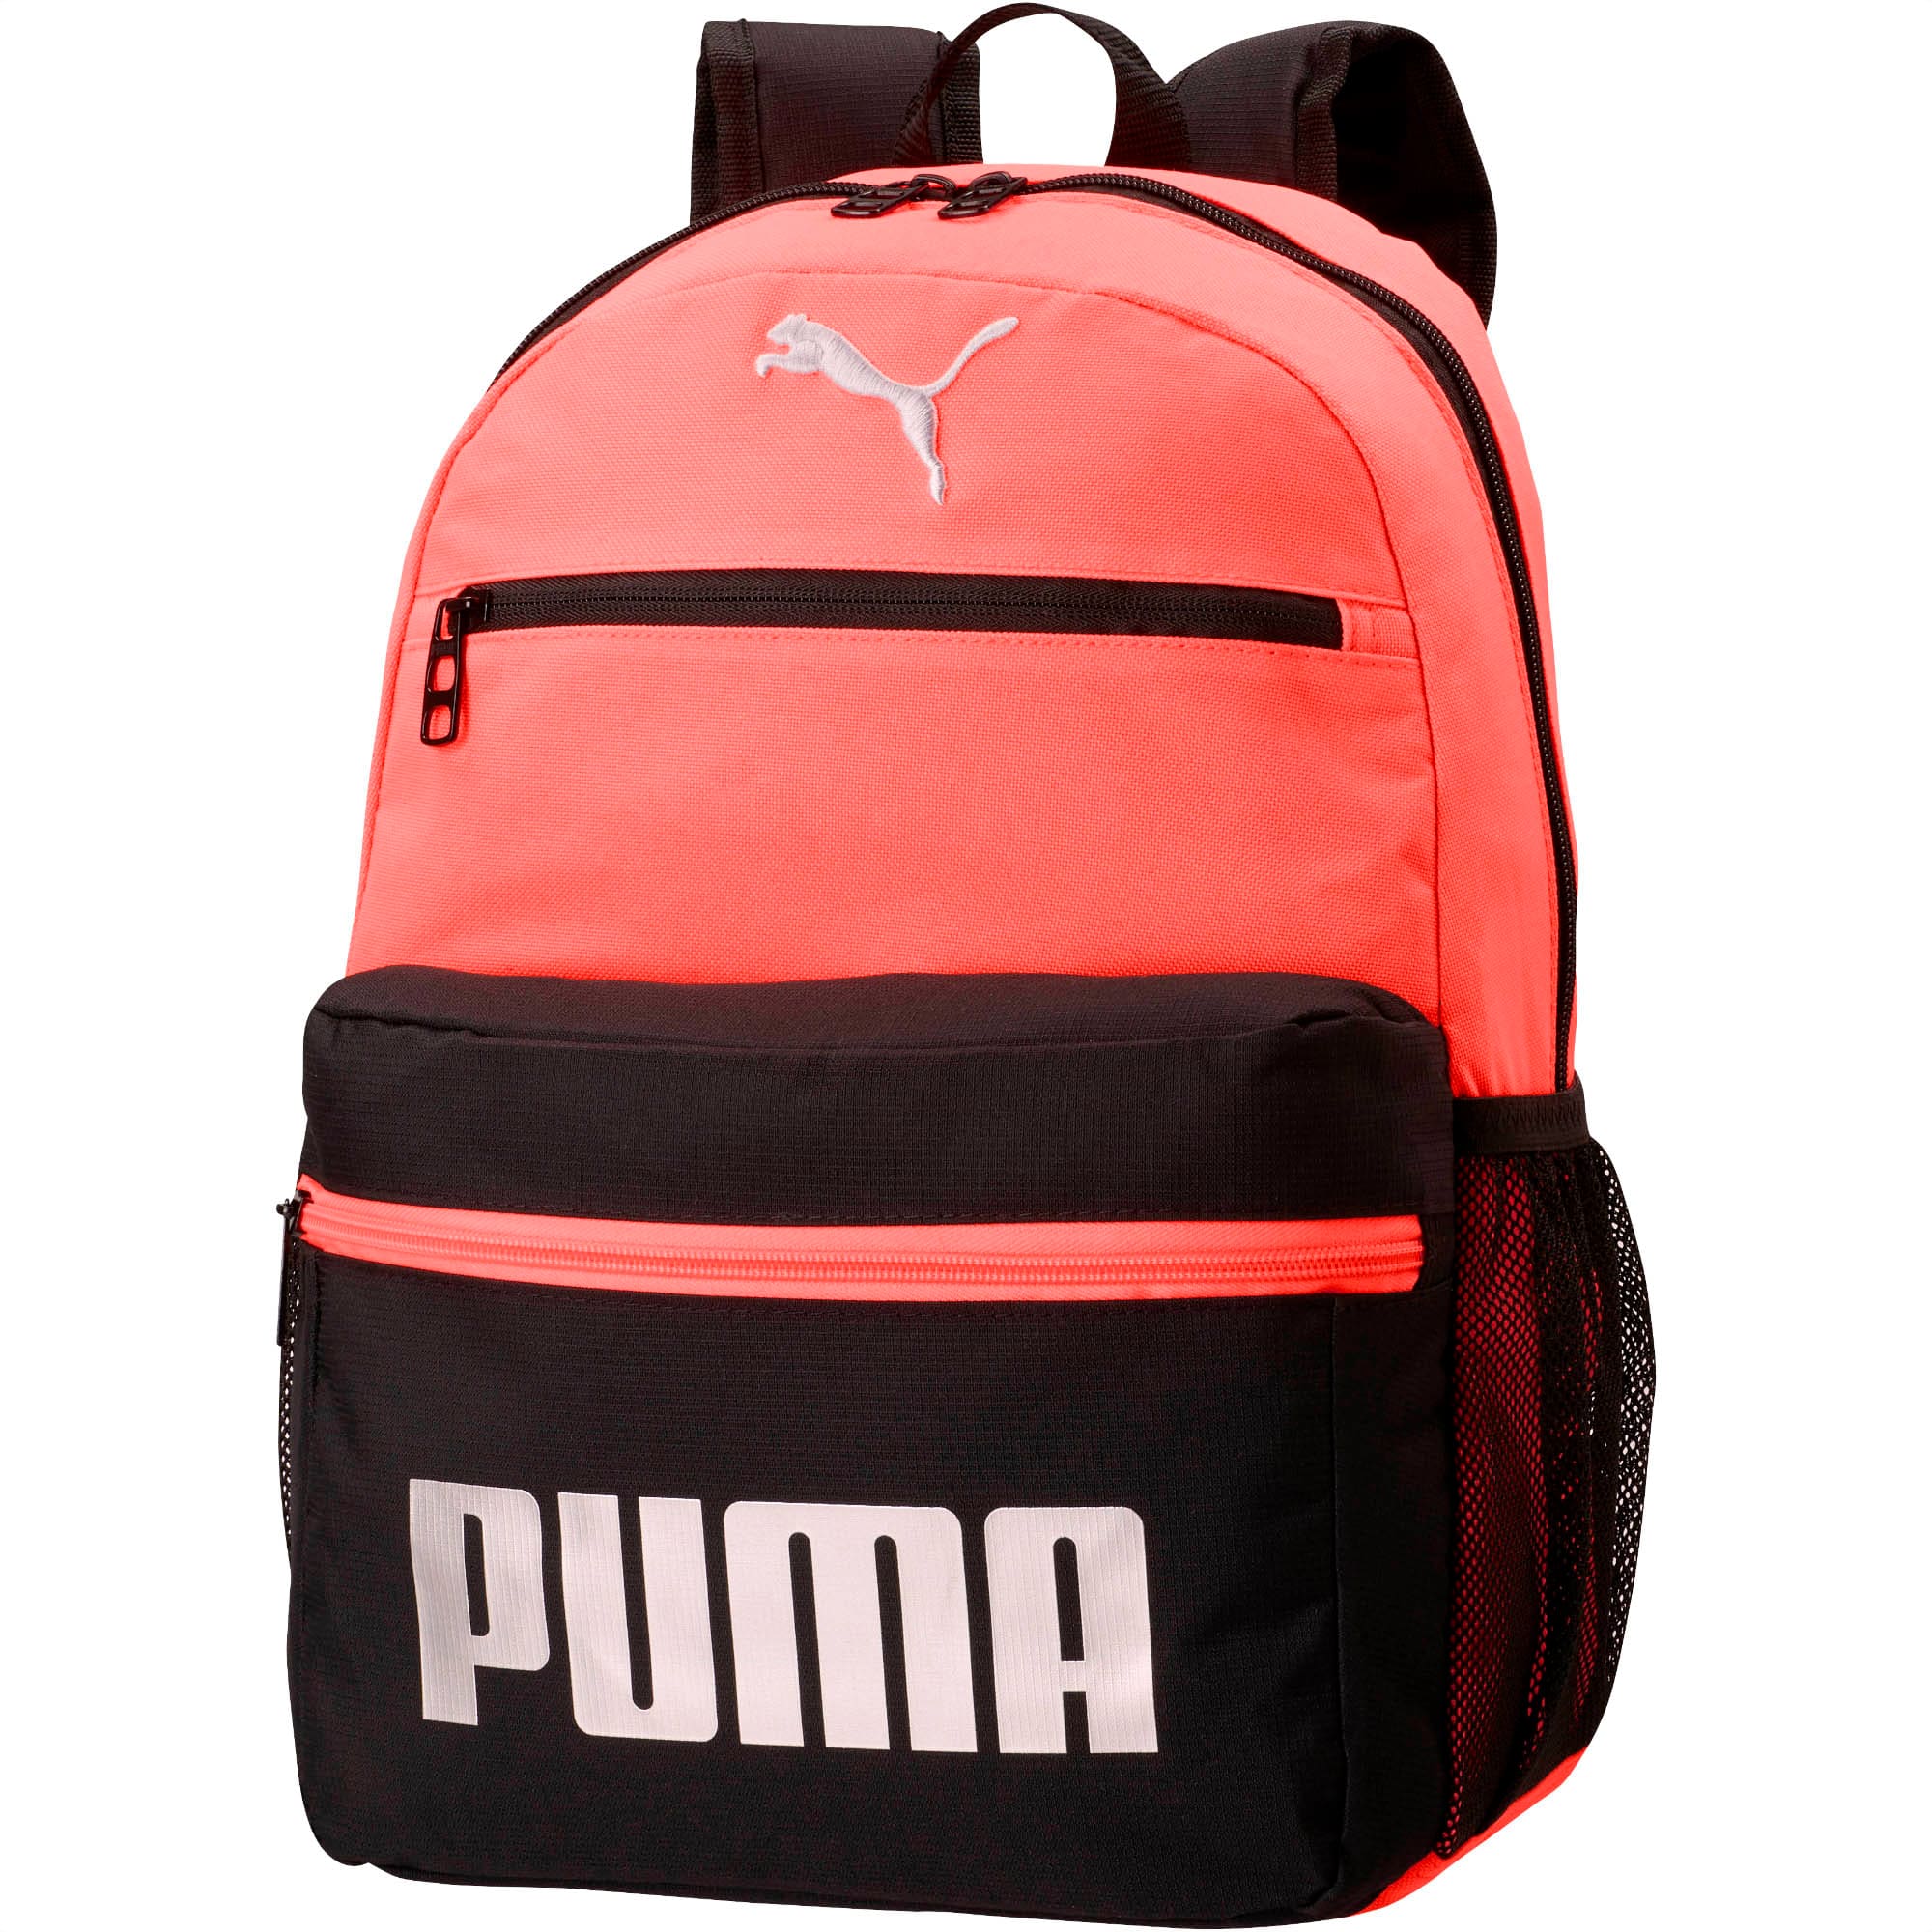 puma kids backpacks